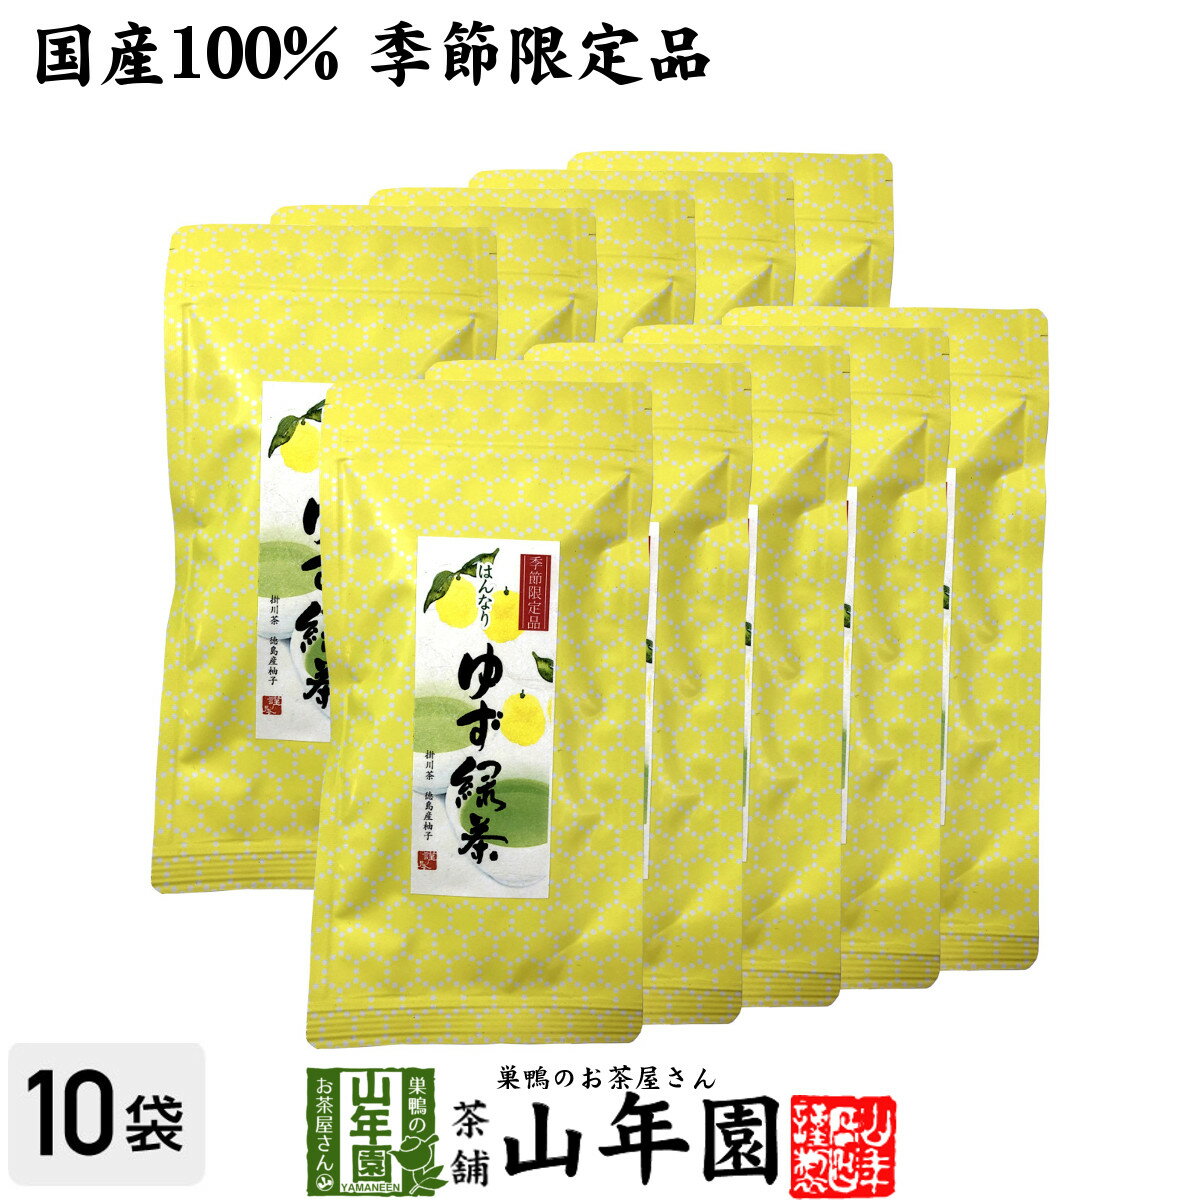 【国産100%】ゆず緑茶 70g×10袋セット送料無料 掛川